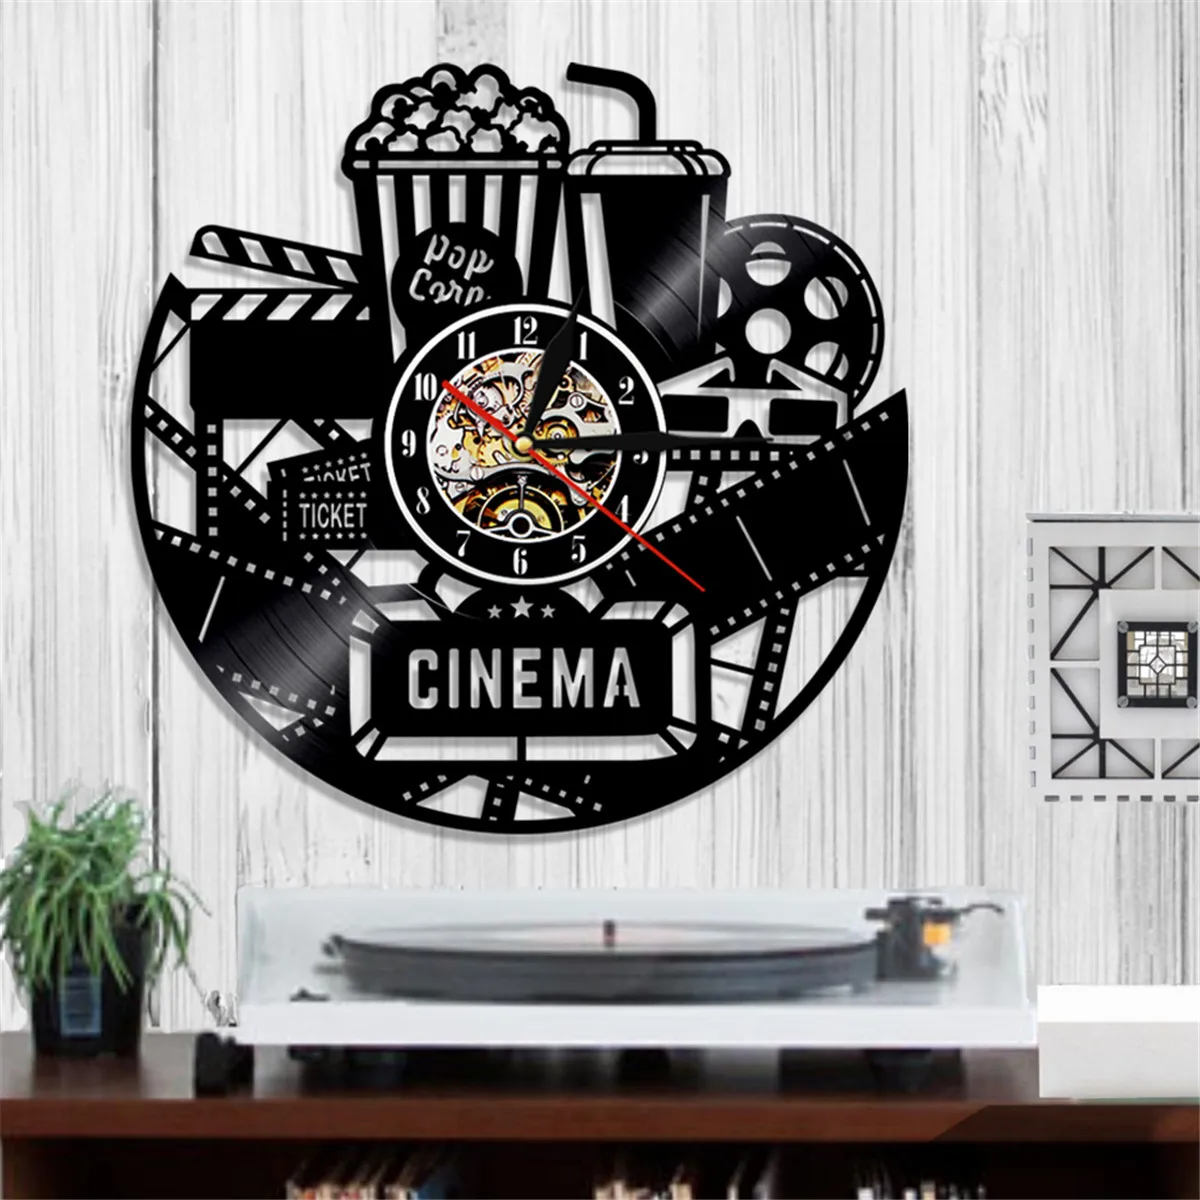 12 дюймы, настенные часы Виниловая пластинка украшения дома Винтаж 3D попкорн кино театр гостиная настенные часы декоративные подарок